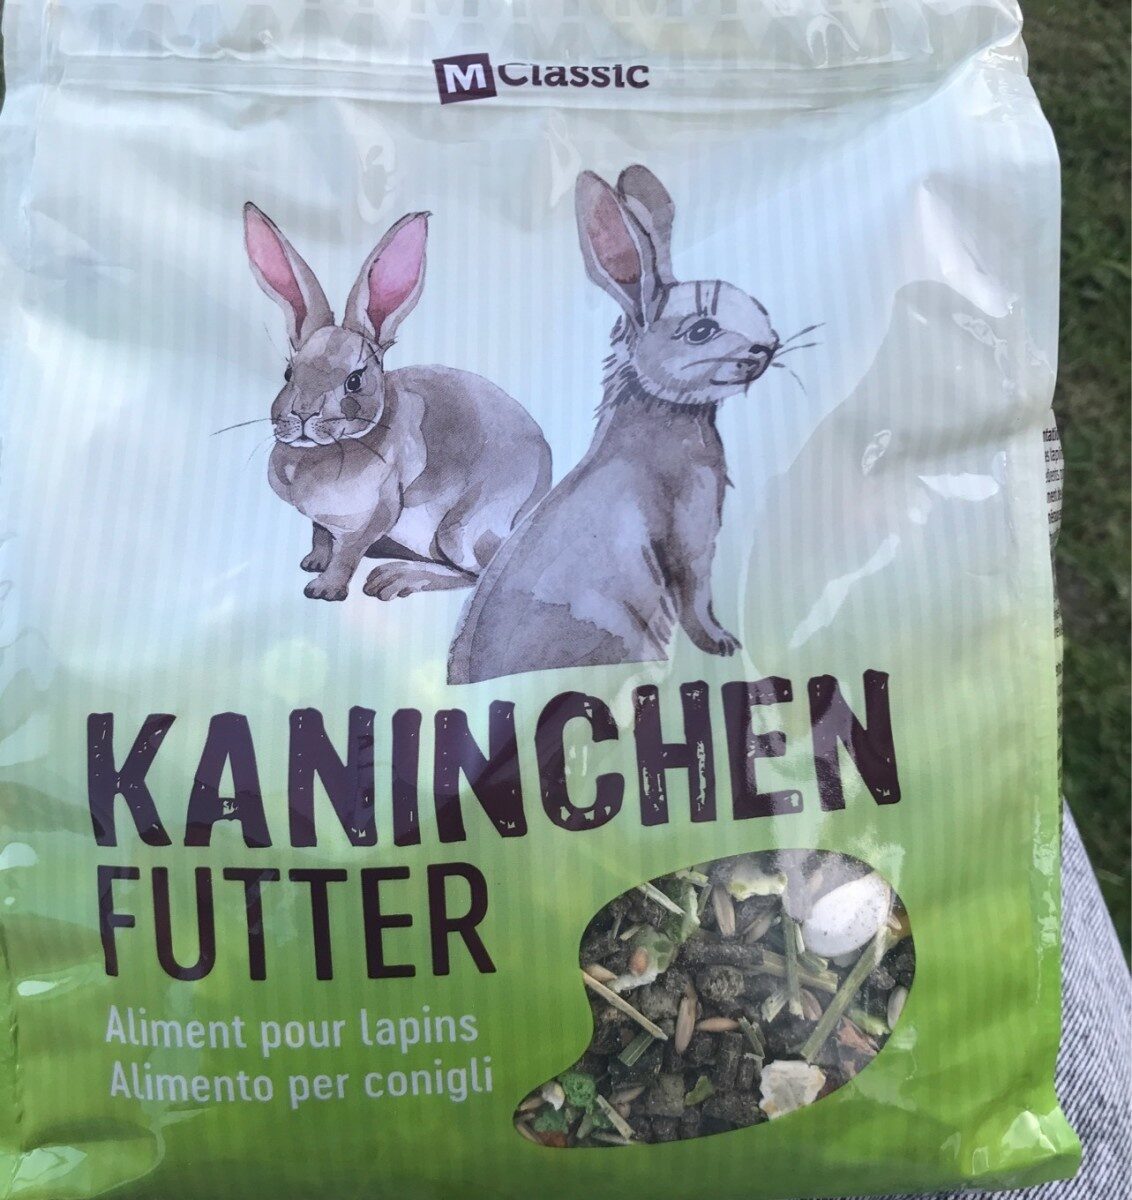 Aliment pour lapins - Product - fr